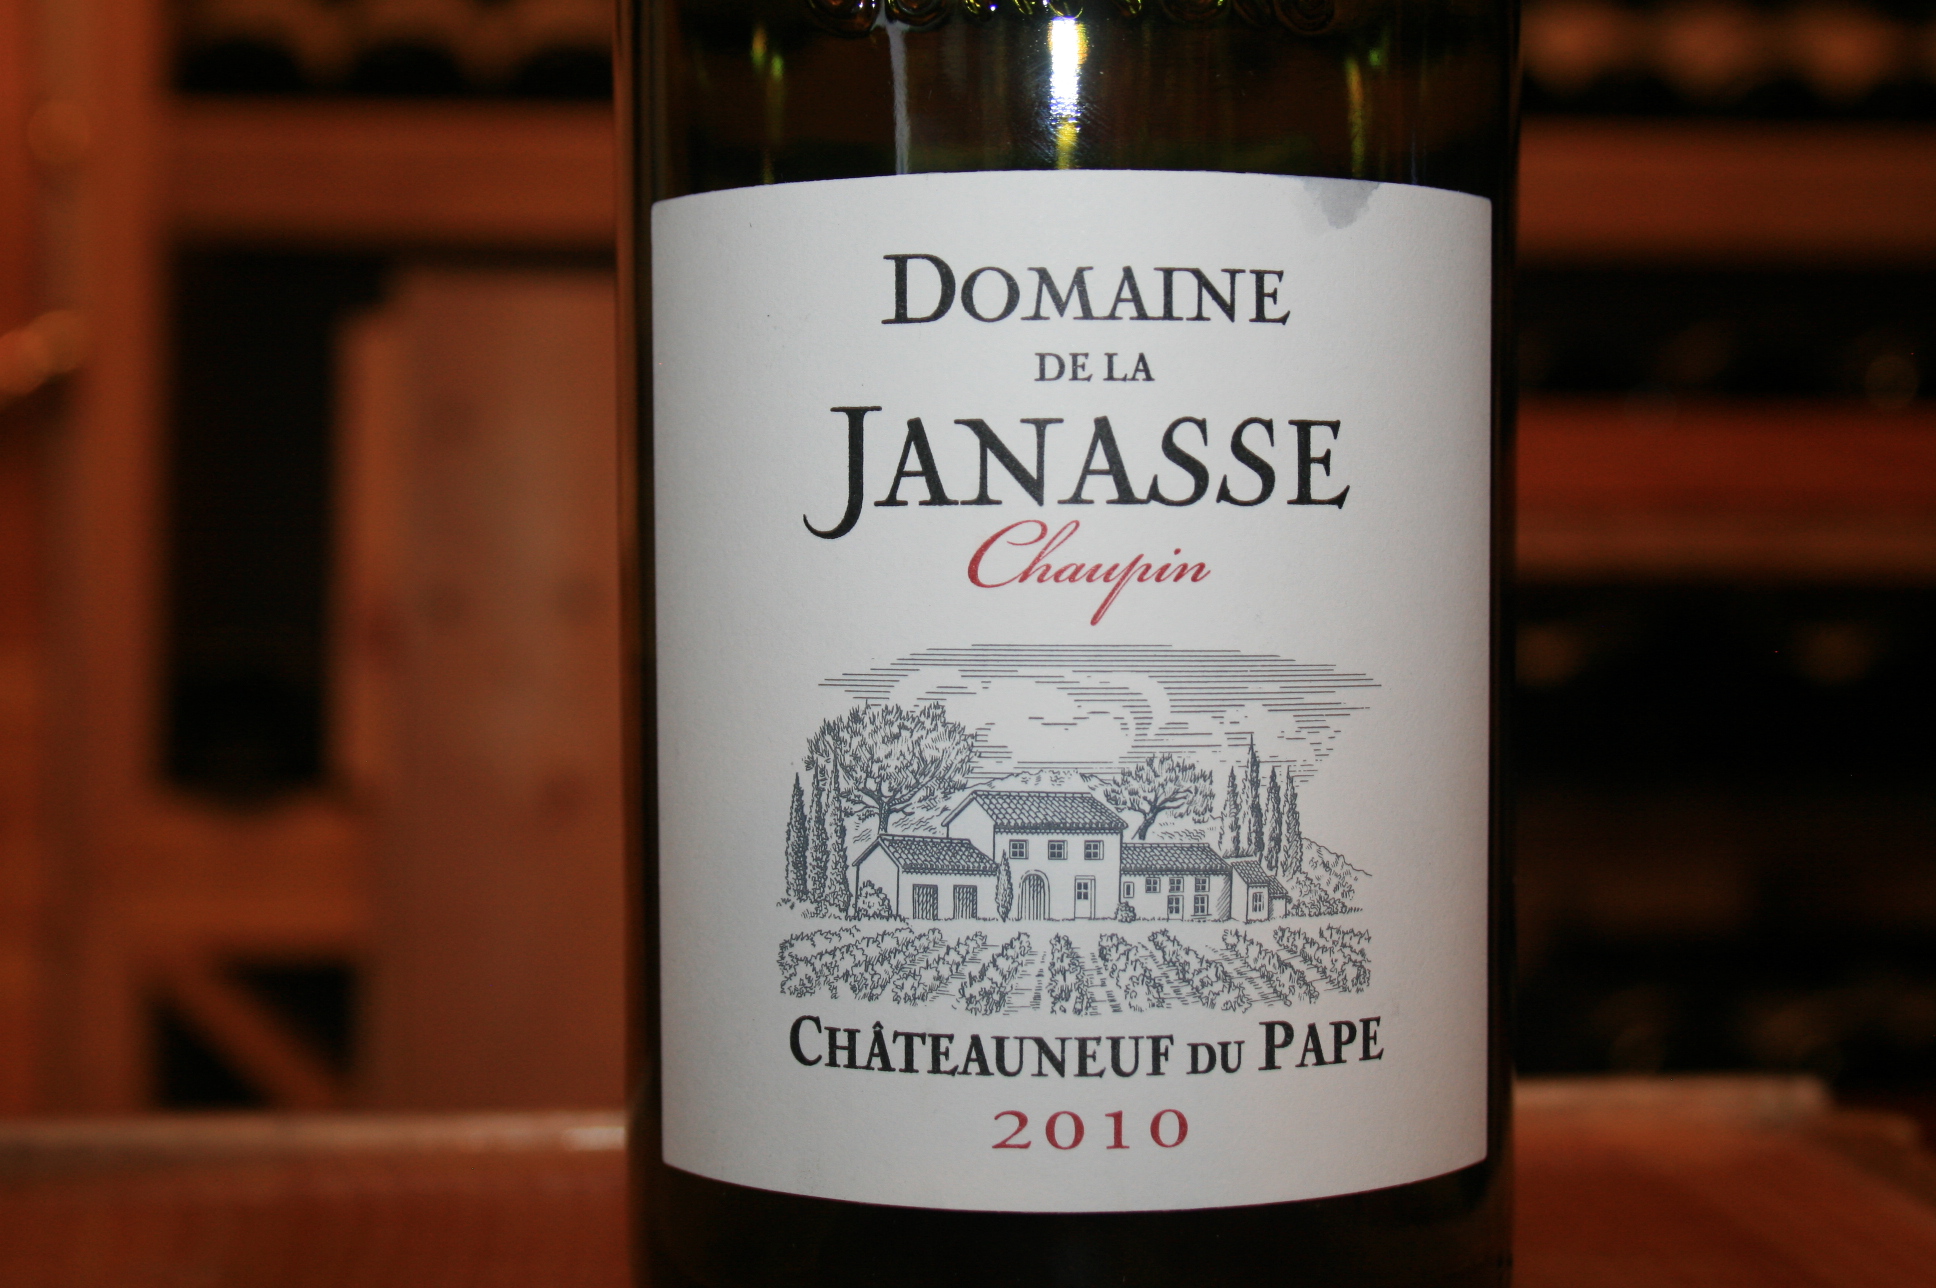 2016 Domaine De Janasse Chateauneuf Du Pape Chaupin - click image for full description